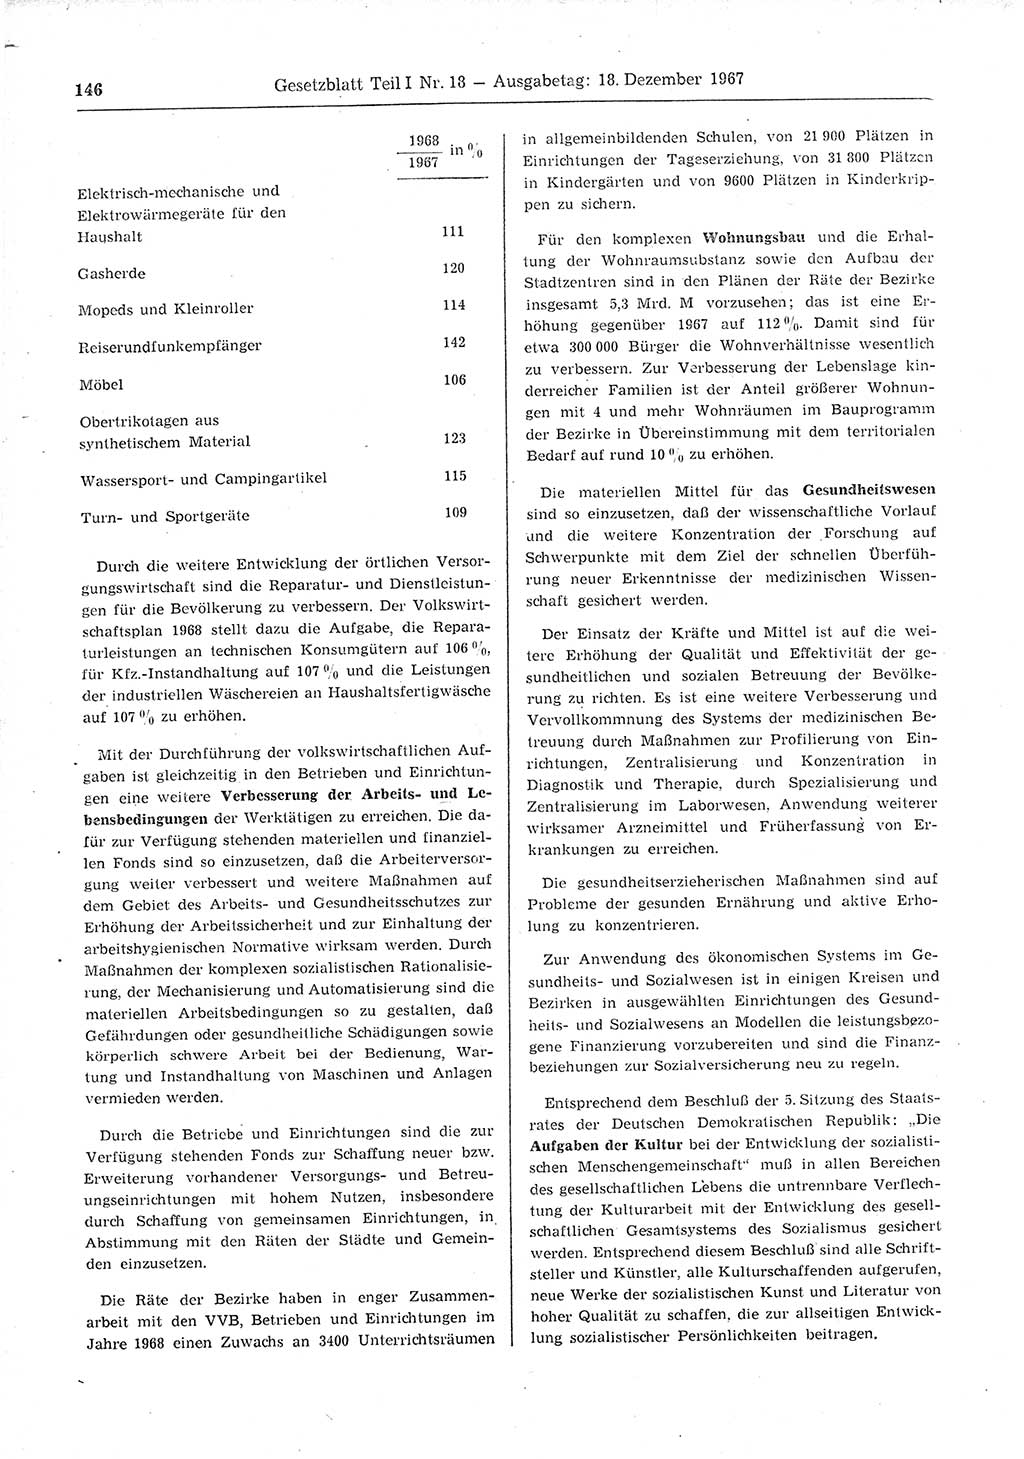 Gesetzblatt (GBl.) der Deutschen Demokratischen Republik (DDR) Teil Ⅰ 1967, Seite 146 (GBl. DDR Ⅰ 1967, S. 146)